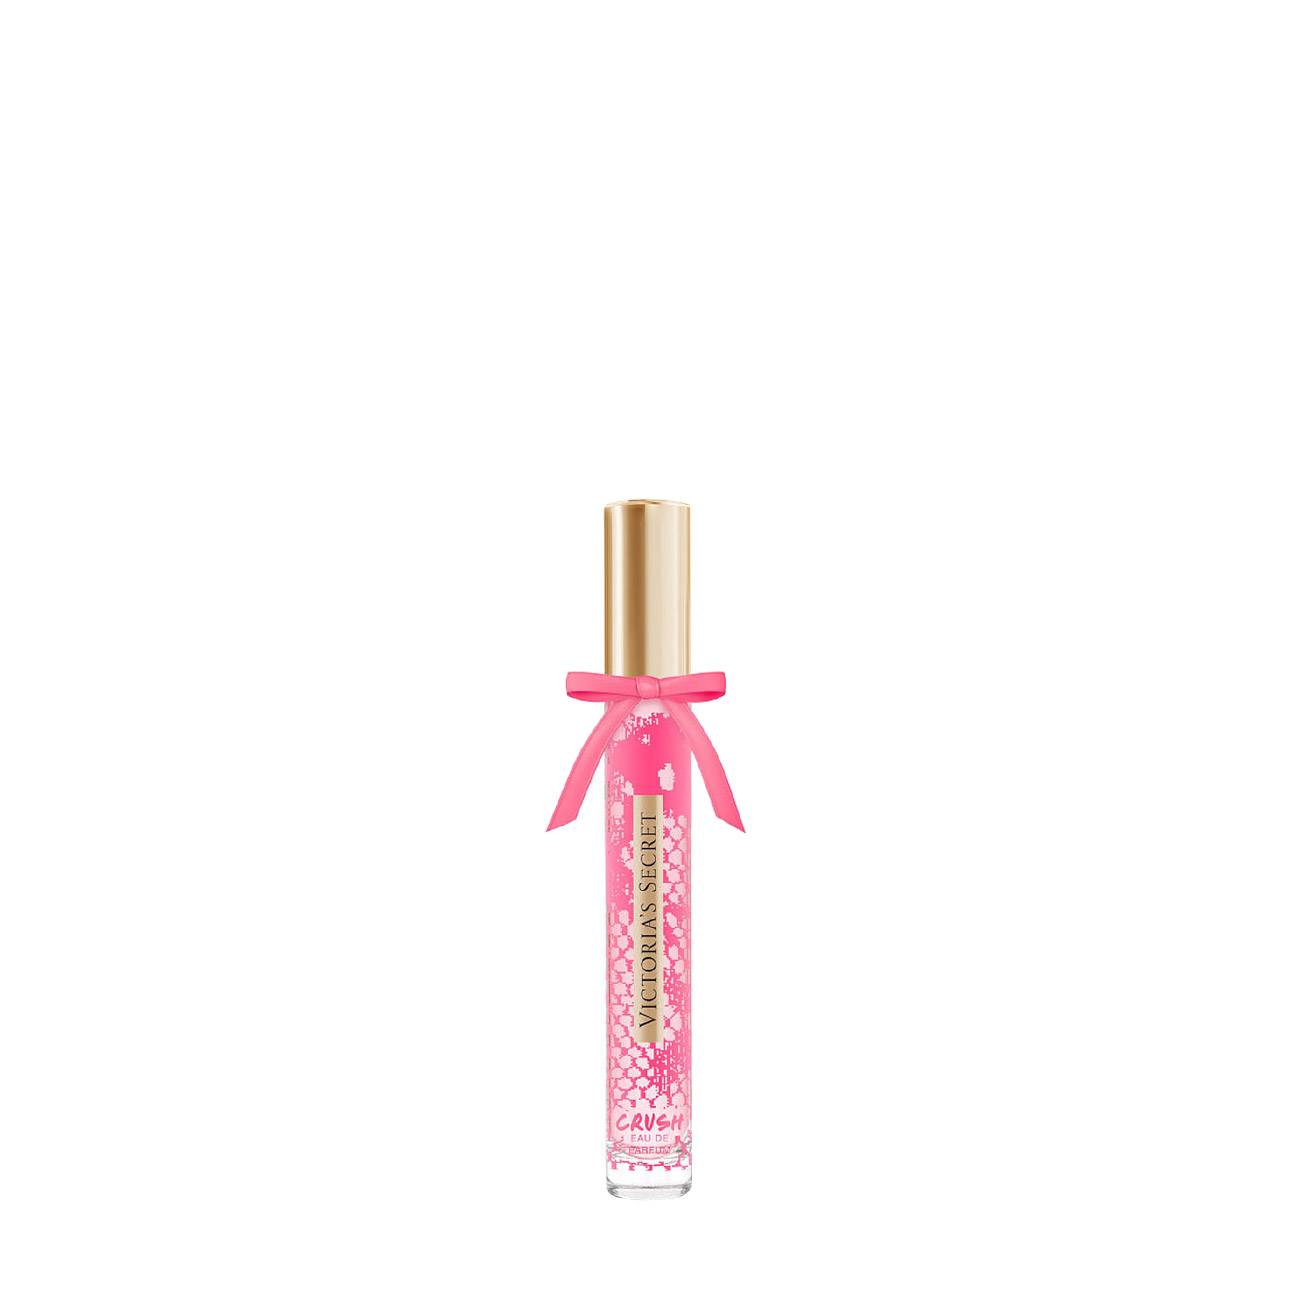 Apa de Parfum Victoria's Secret CRUSH ROLLERBALL 7ml cu comanda online